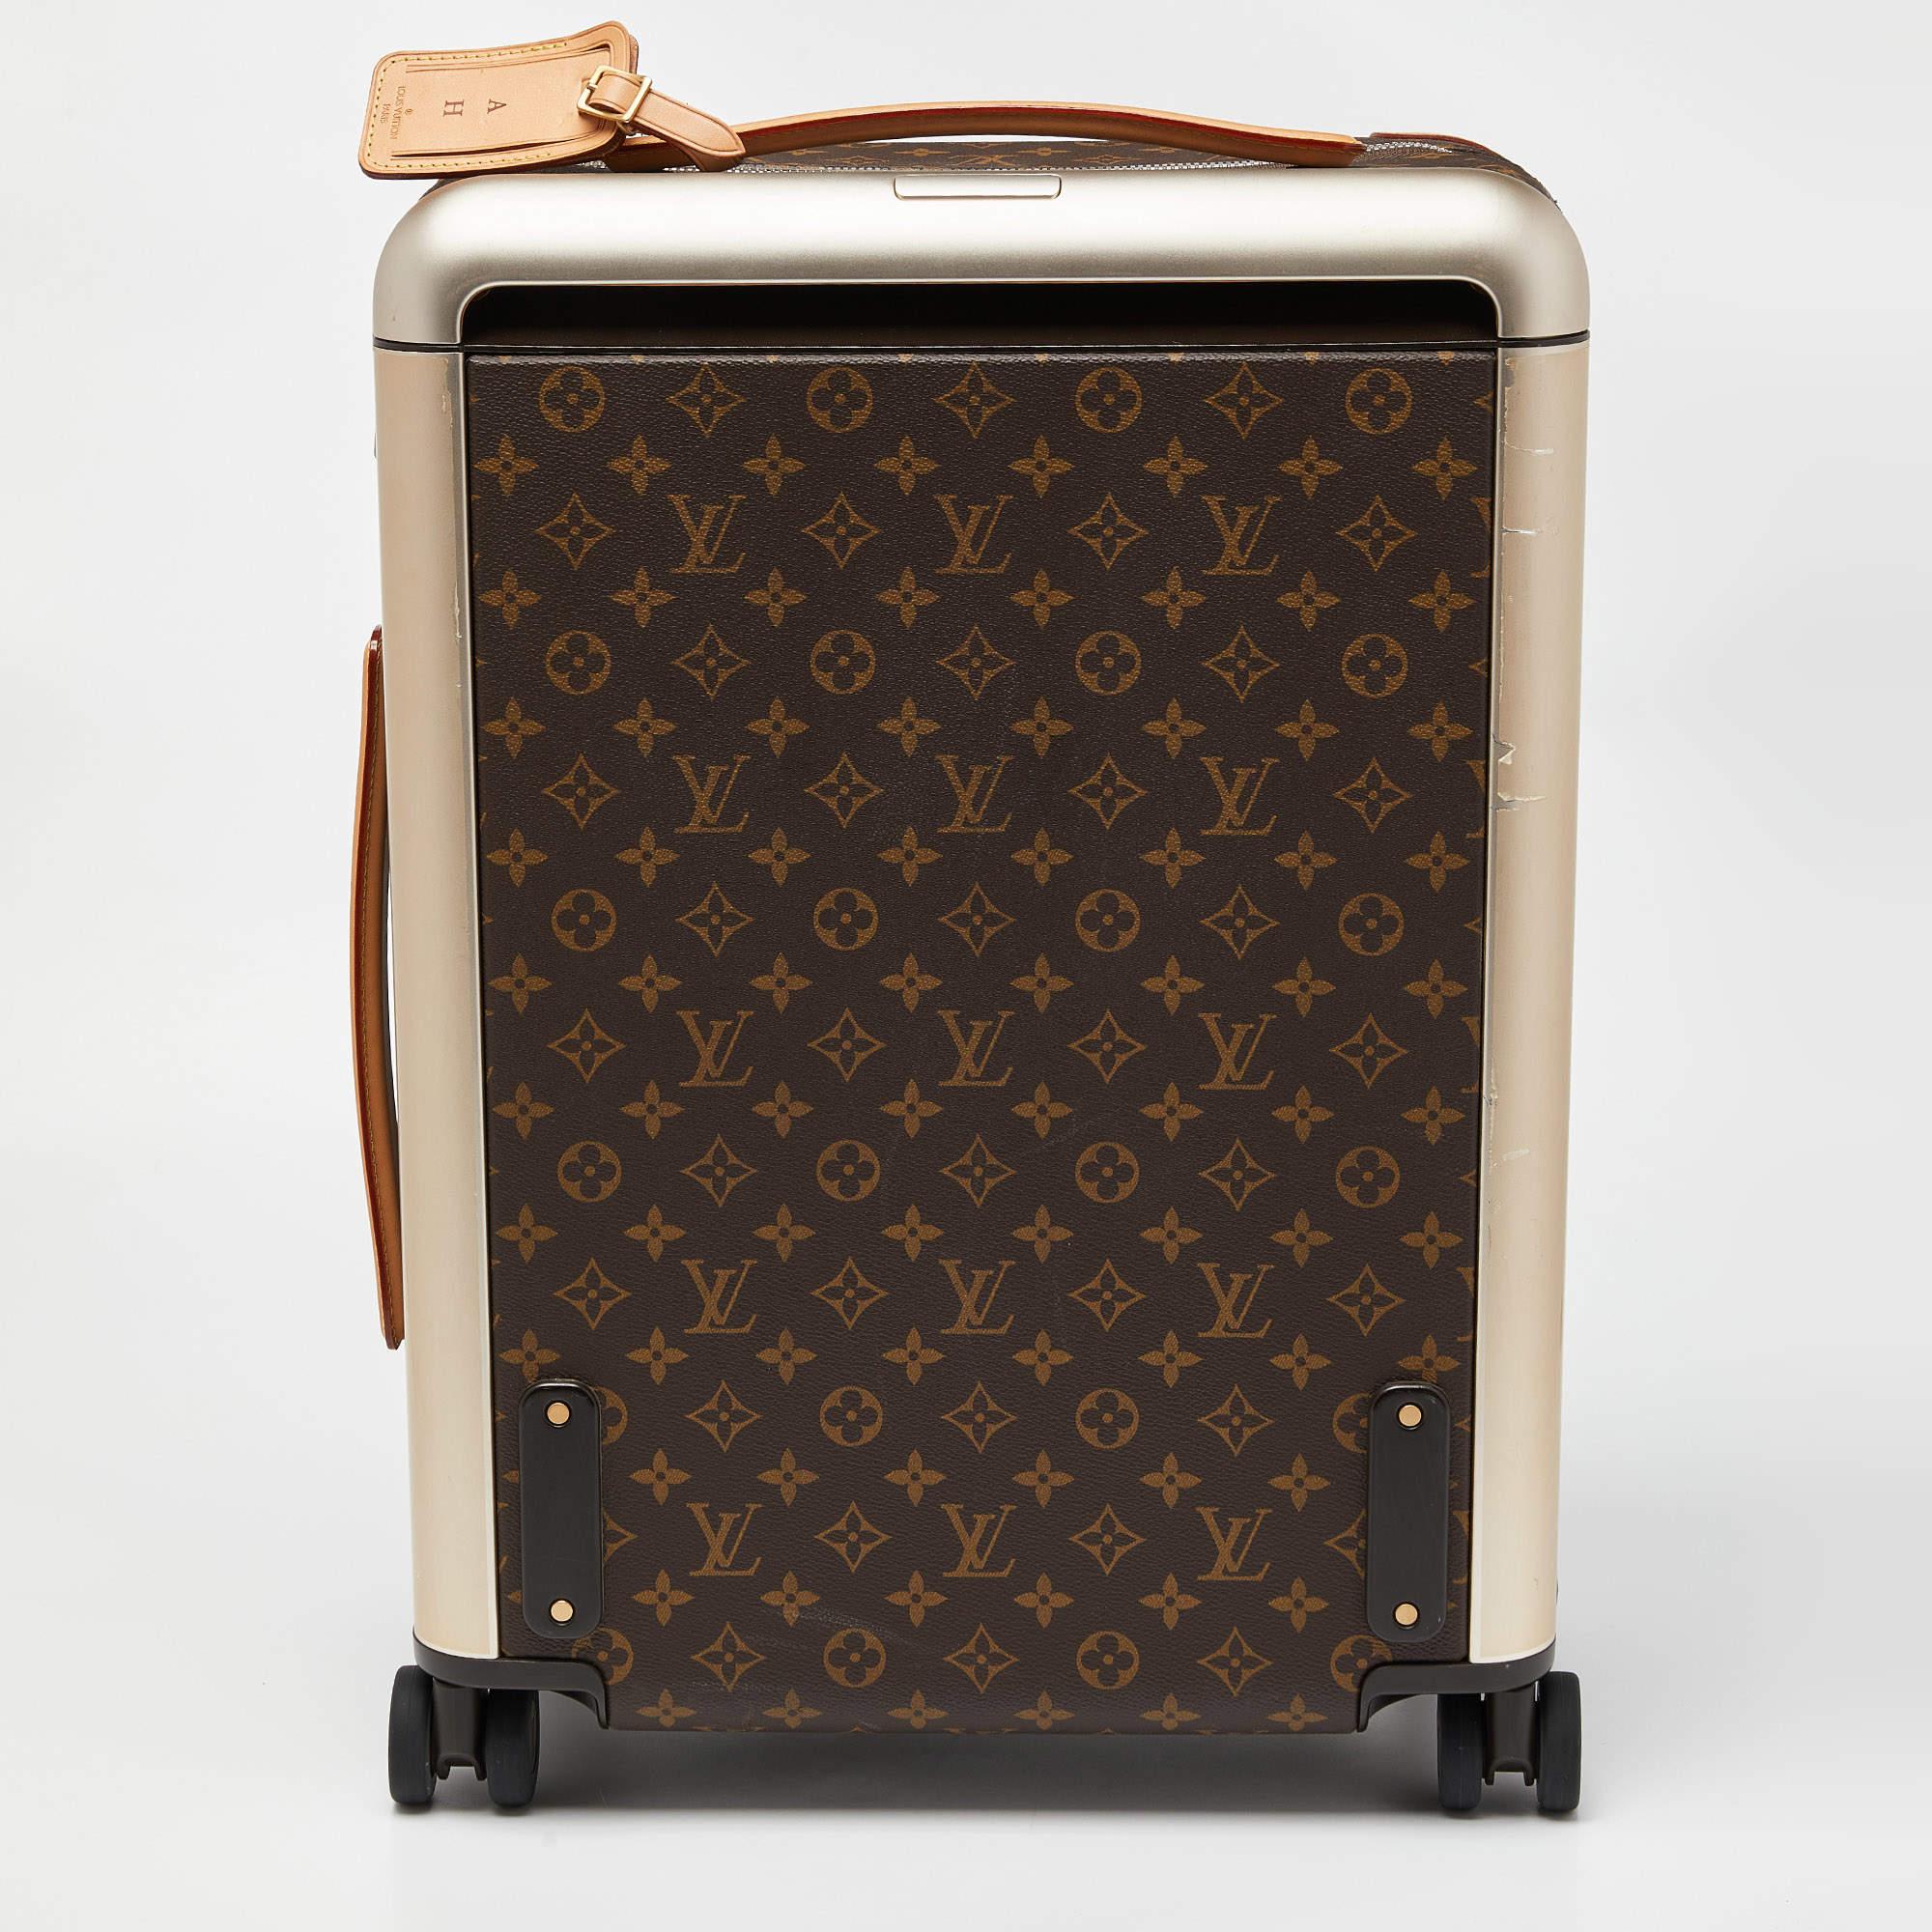 Pour améliorer votre expérience de voyage, Louis Vuitton vous propose cette valise Horizon 50, d'une grande fiabilité. Confectionnée en toile Monogram, cette valise présente des accessoires argentés, une poignée trolley robuste et un intérieur